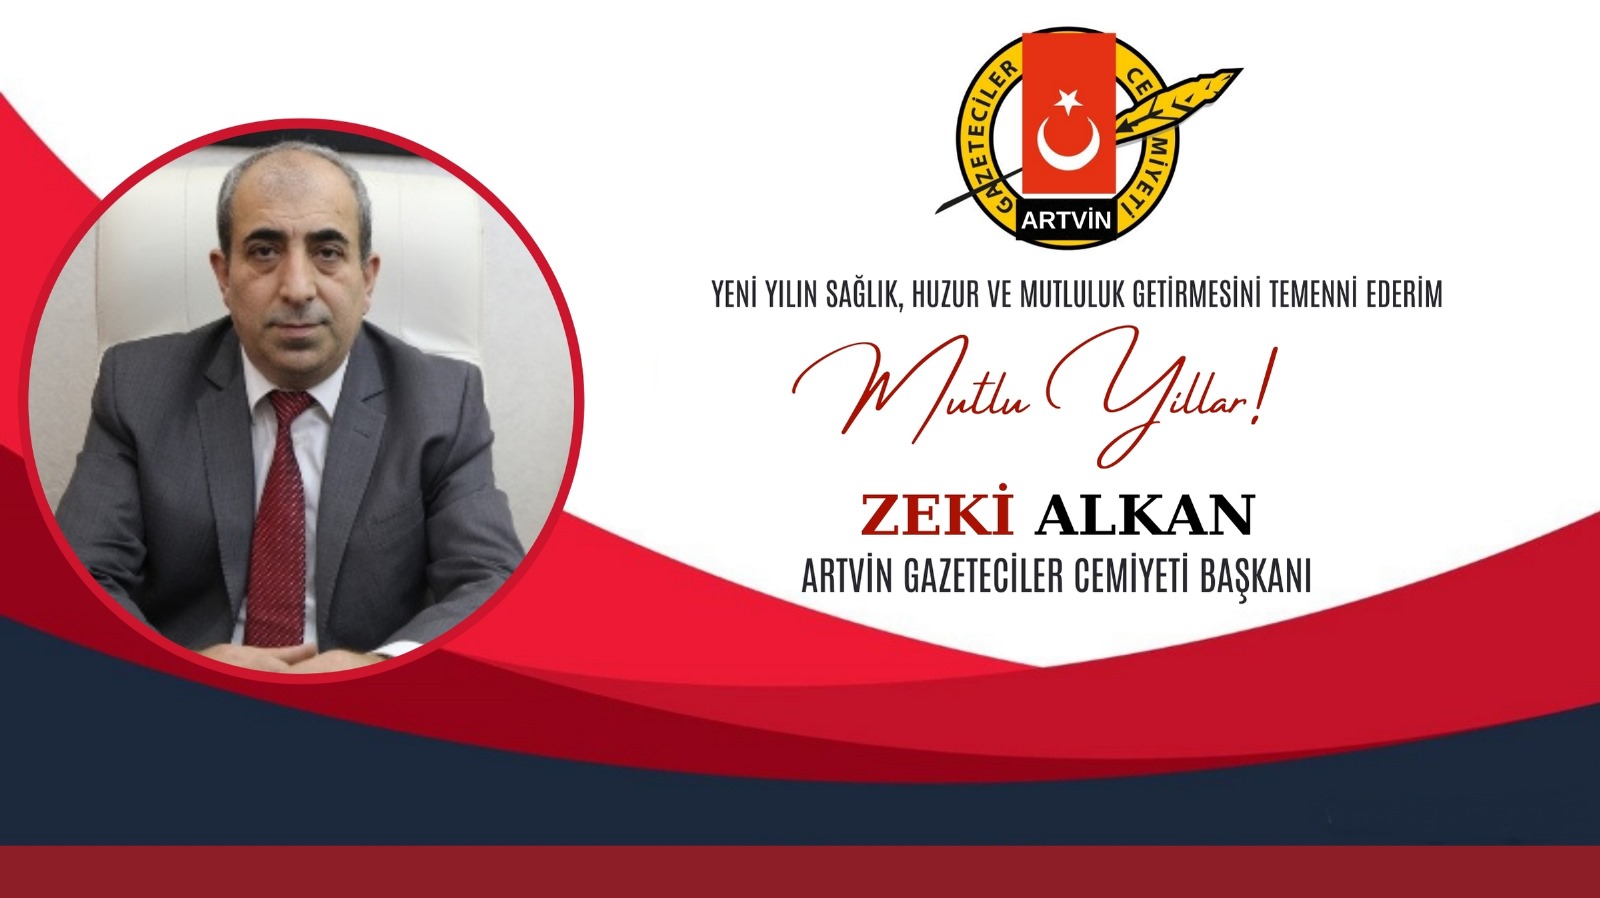 Artvin Gazeteciler Cemiyeti Başkanı Zeki Alkan'dan Yeni Yıl Mesajı